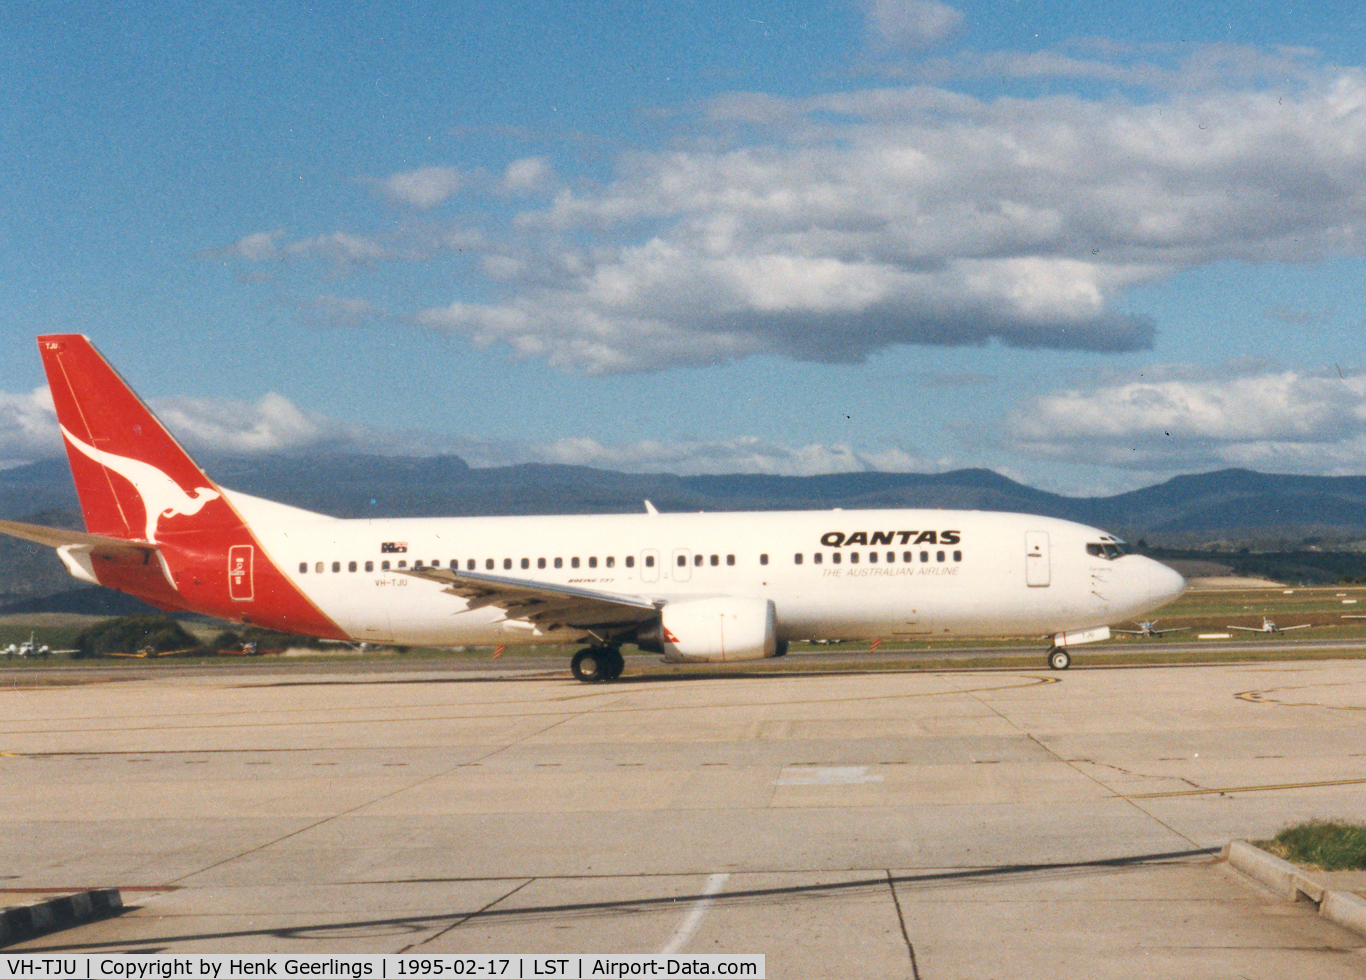 VH-TJU, 1993 Boeing 737-476 C/N 24446, Qantas